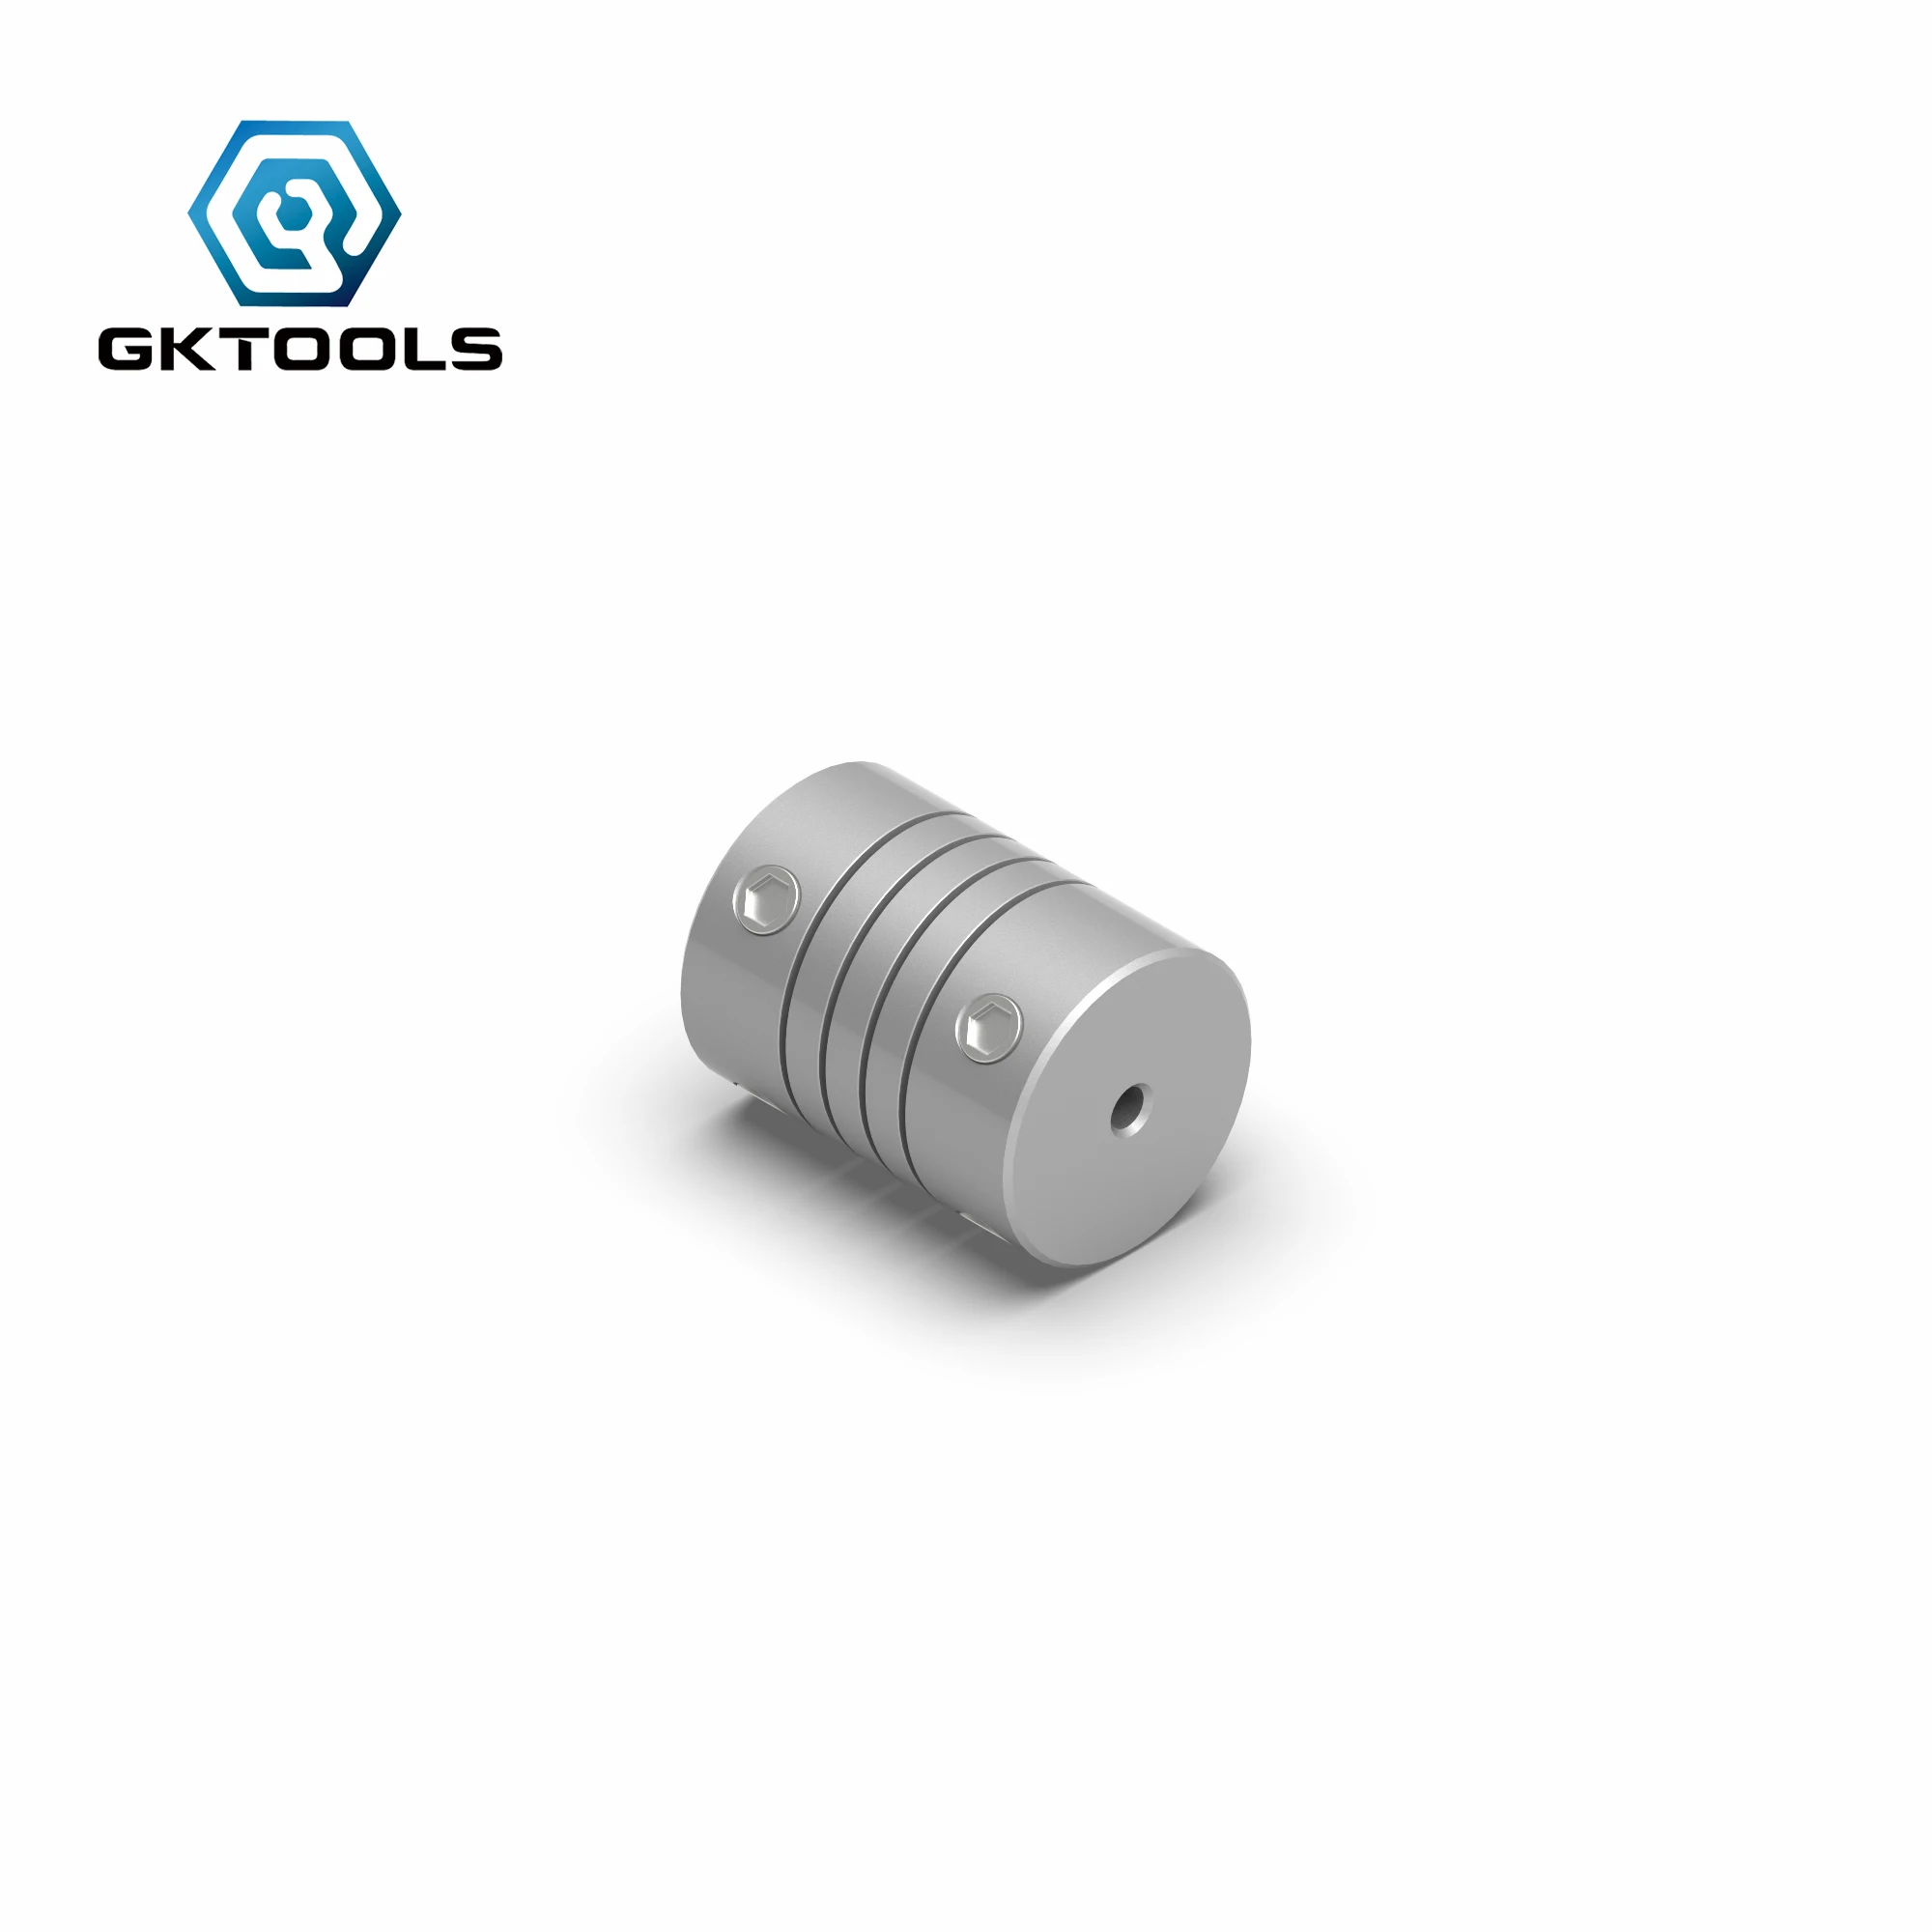 Алюминиевый ЧПУ двигатель GKTOOLS штыревой вал соединителя 2 мм до 8 гибкая муфта OD